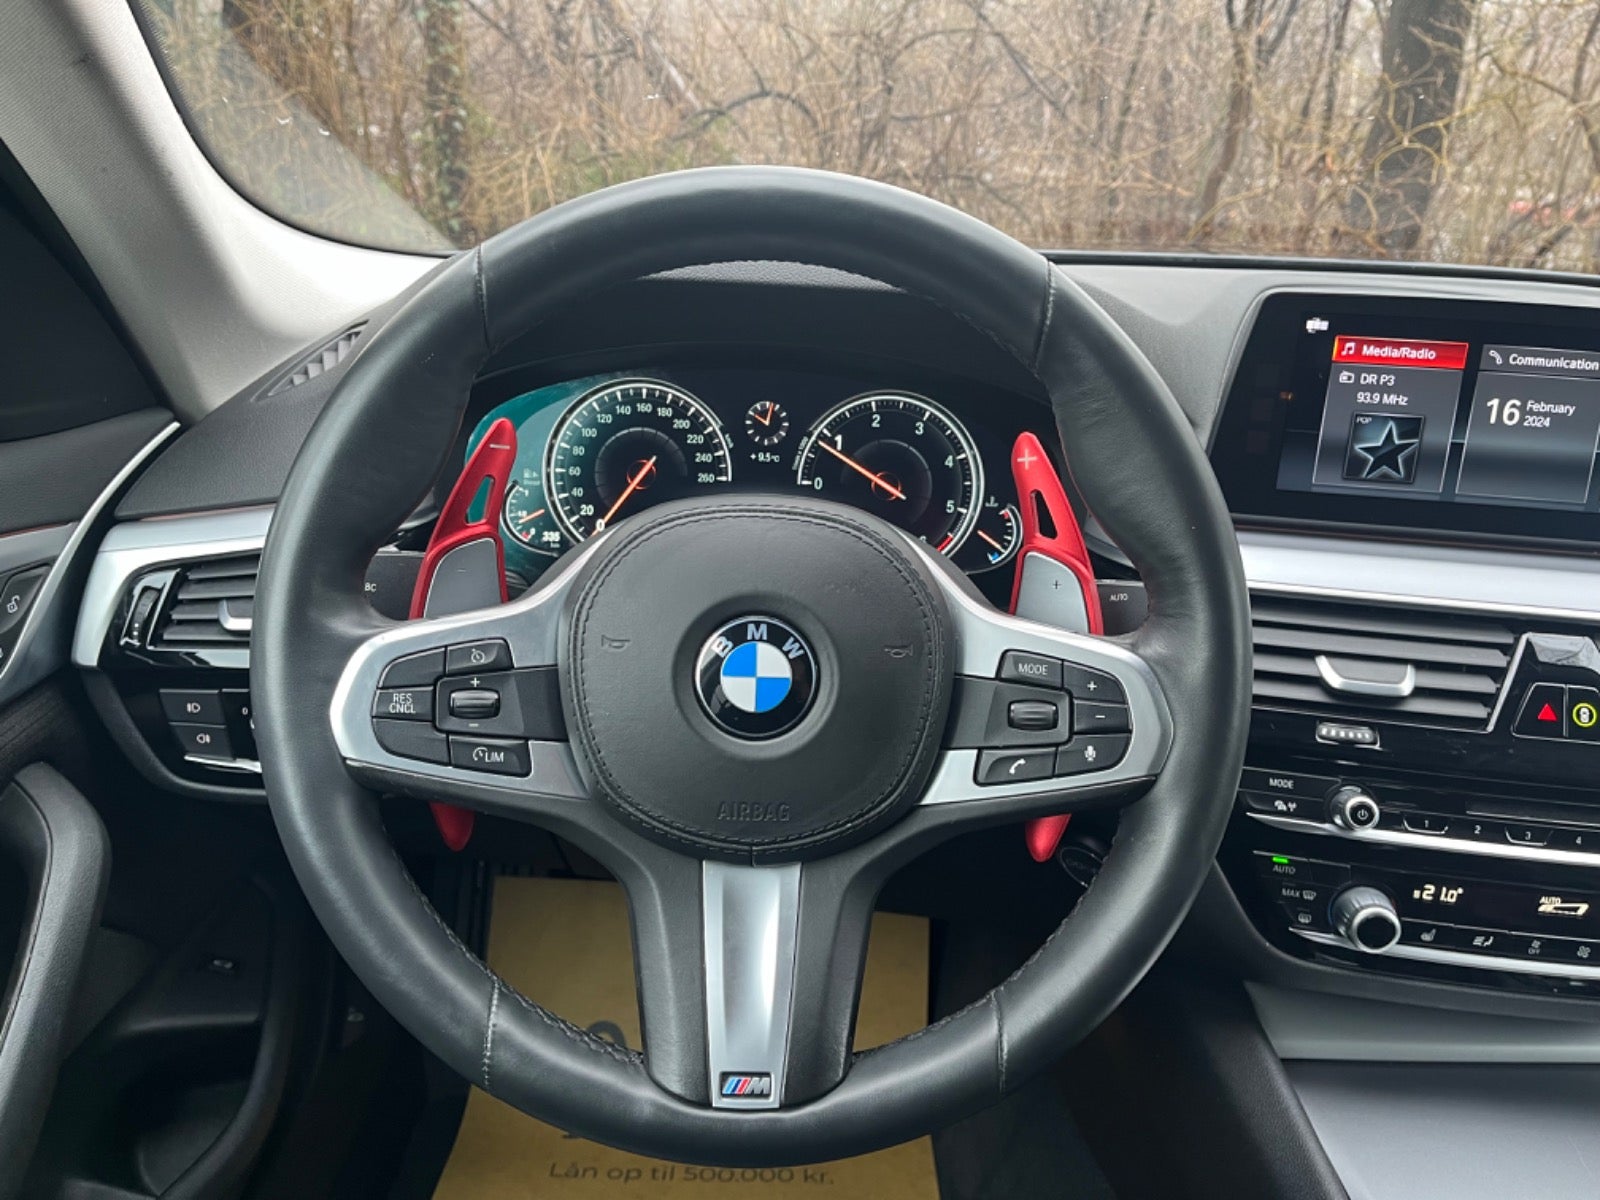 BMW 520d 2,0 M-Sport aut. Diesel aut. Automatgear modelår